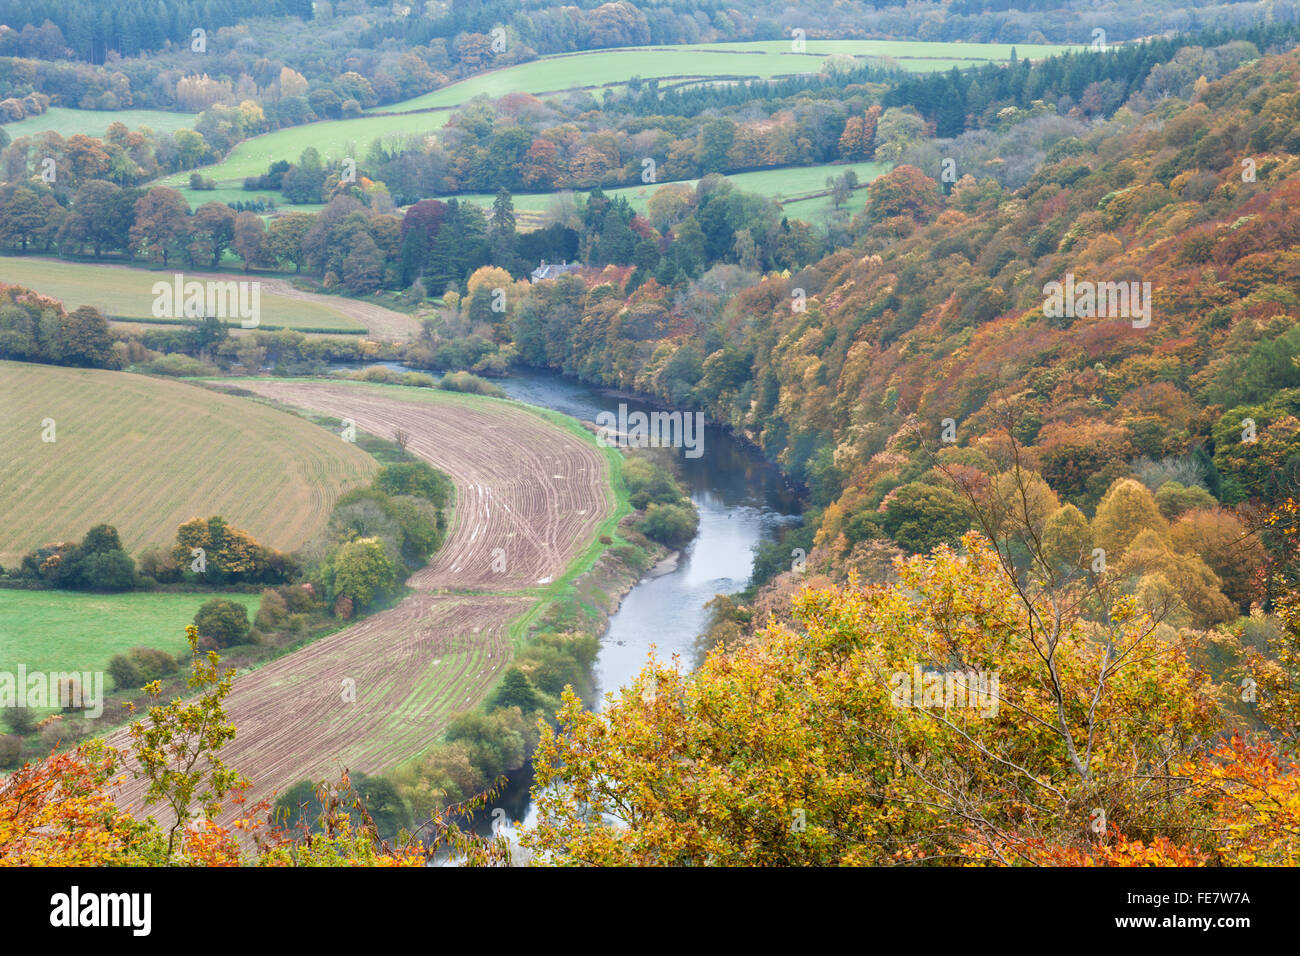 Erhöhte Aussicht auf das untere Wye Valley mit dem River Wye, der sich durch eine goldene Herbstlandschaft und Ackerland in der Nähe von Llandogo, Monmouthshire, Wales schlängelt Stockfoto